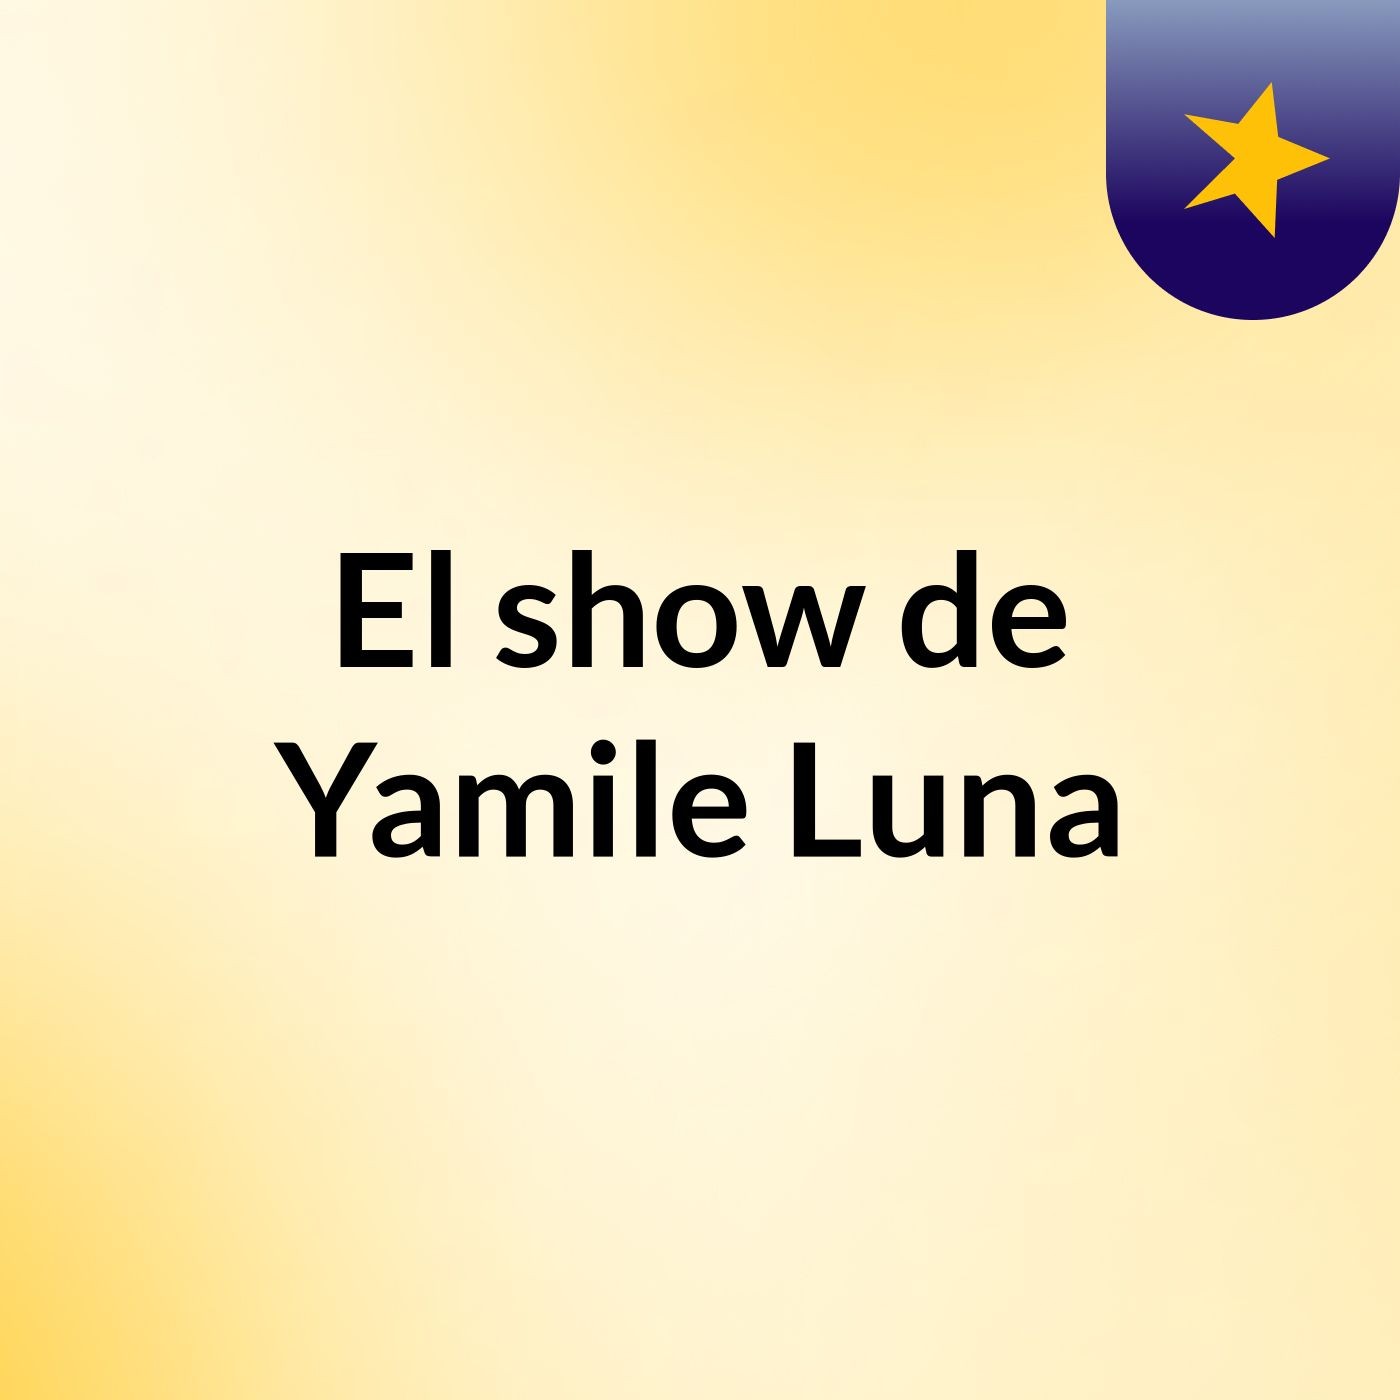 El show de Yamile Luna